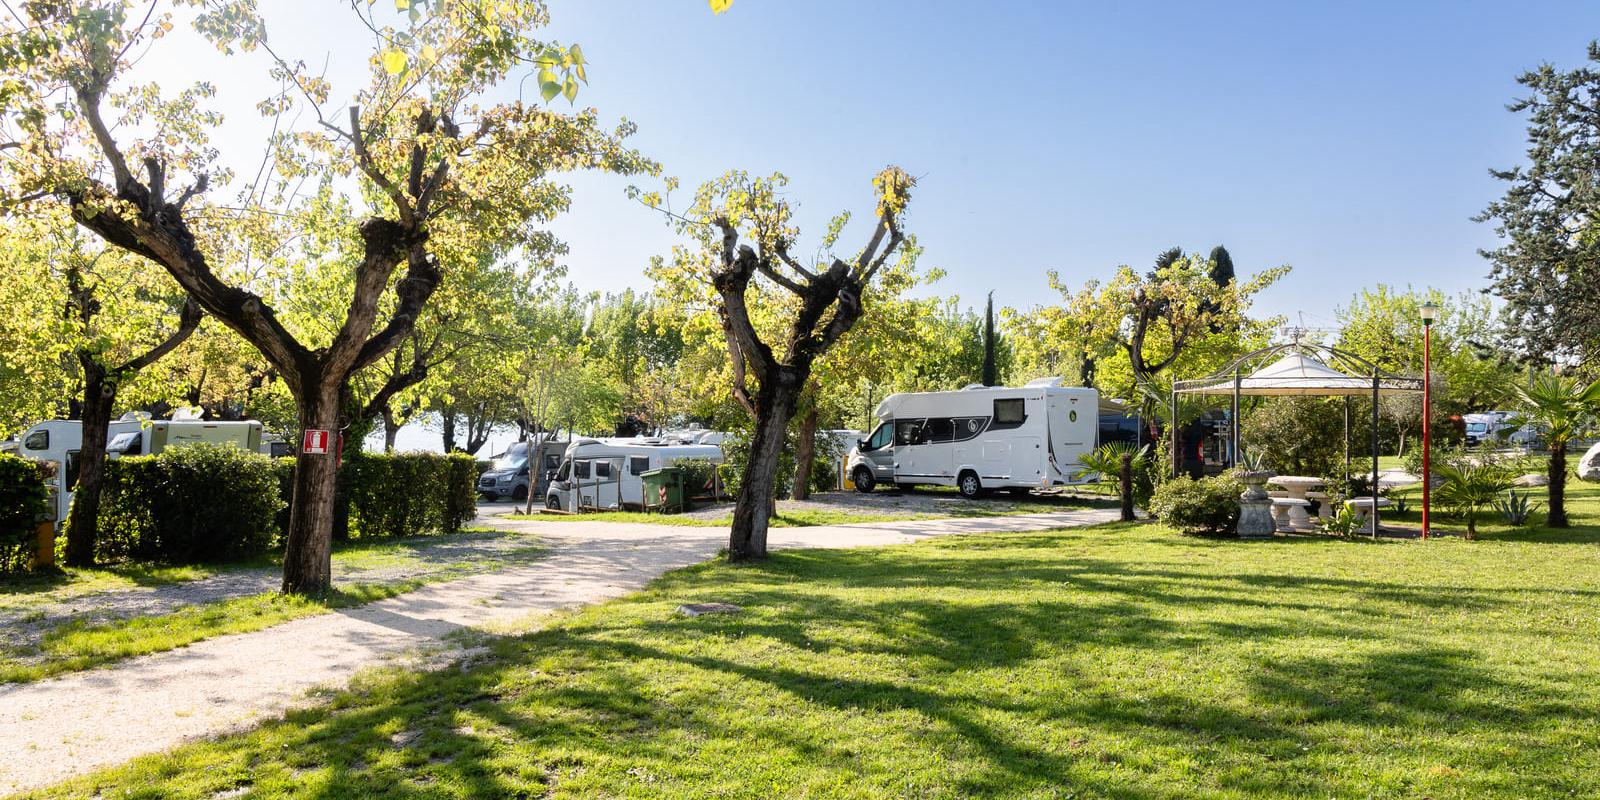 Campingplatz mit Wohnmobilen, Bäumen und Grünfläche an einem sonnigen Tag.